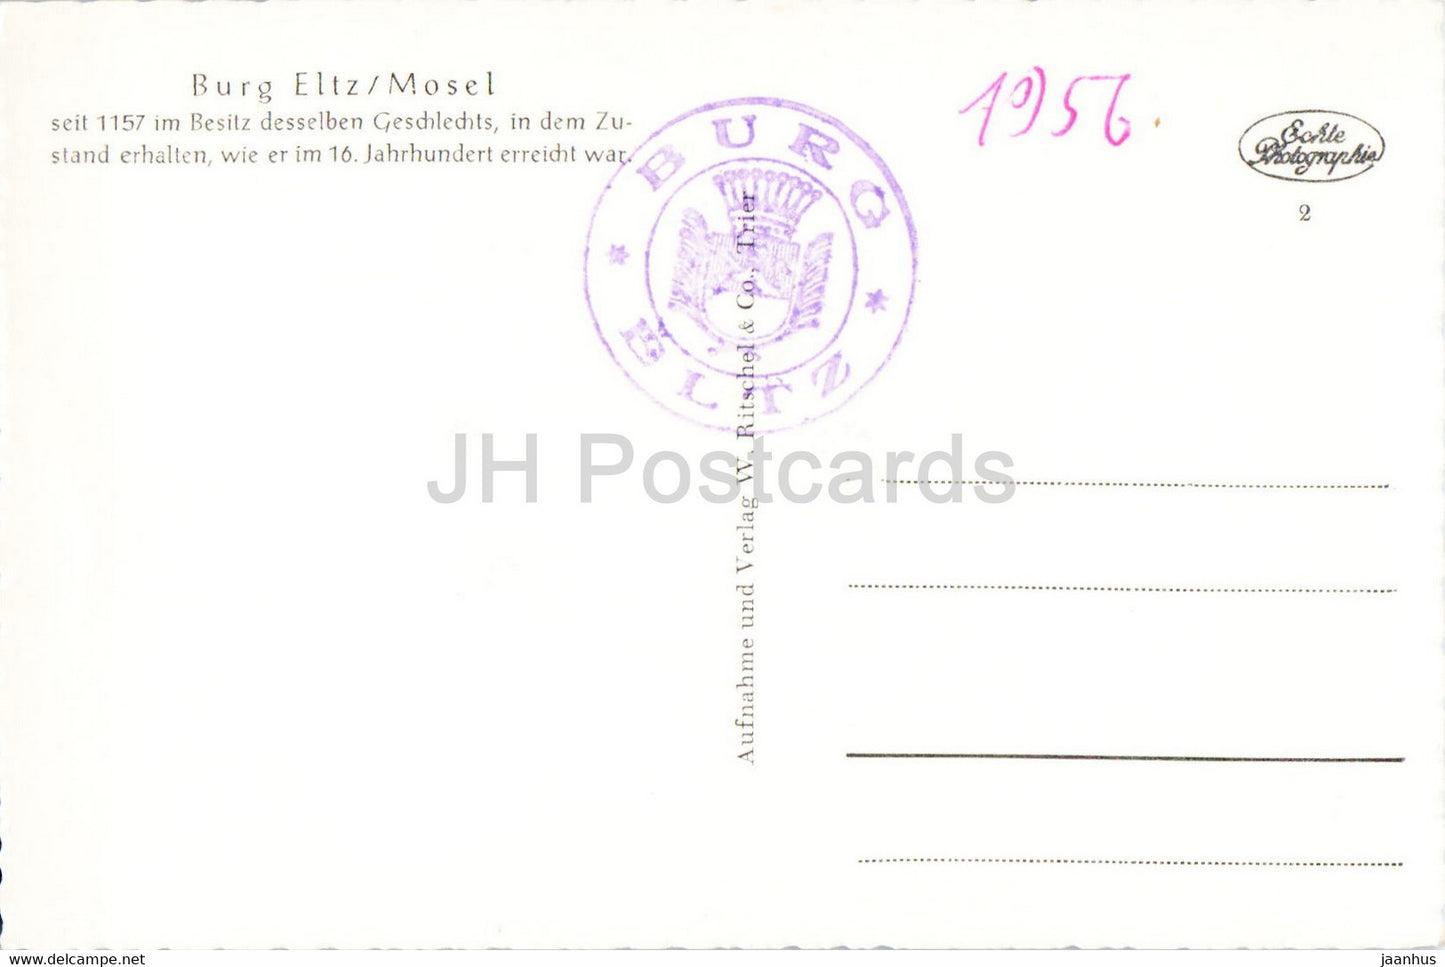 Burg Eltz - Mosel - Burg - alte Postkarte - Deutschland - unbenutzt